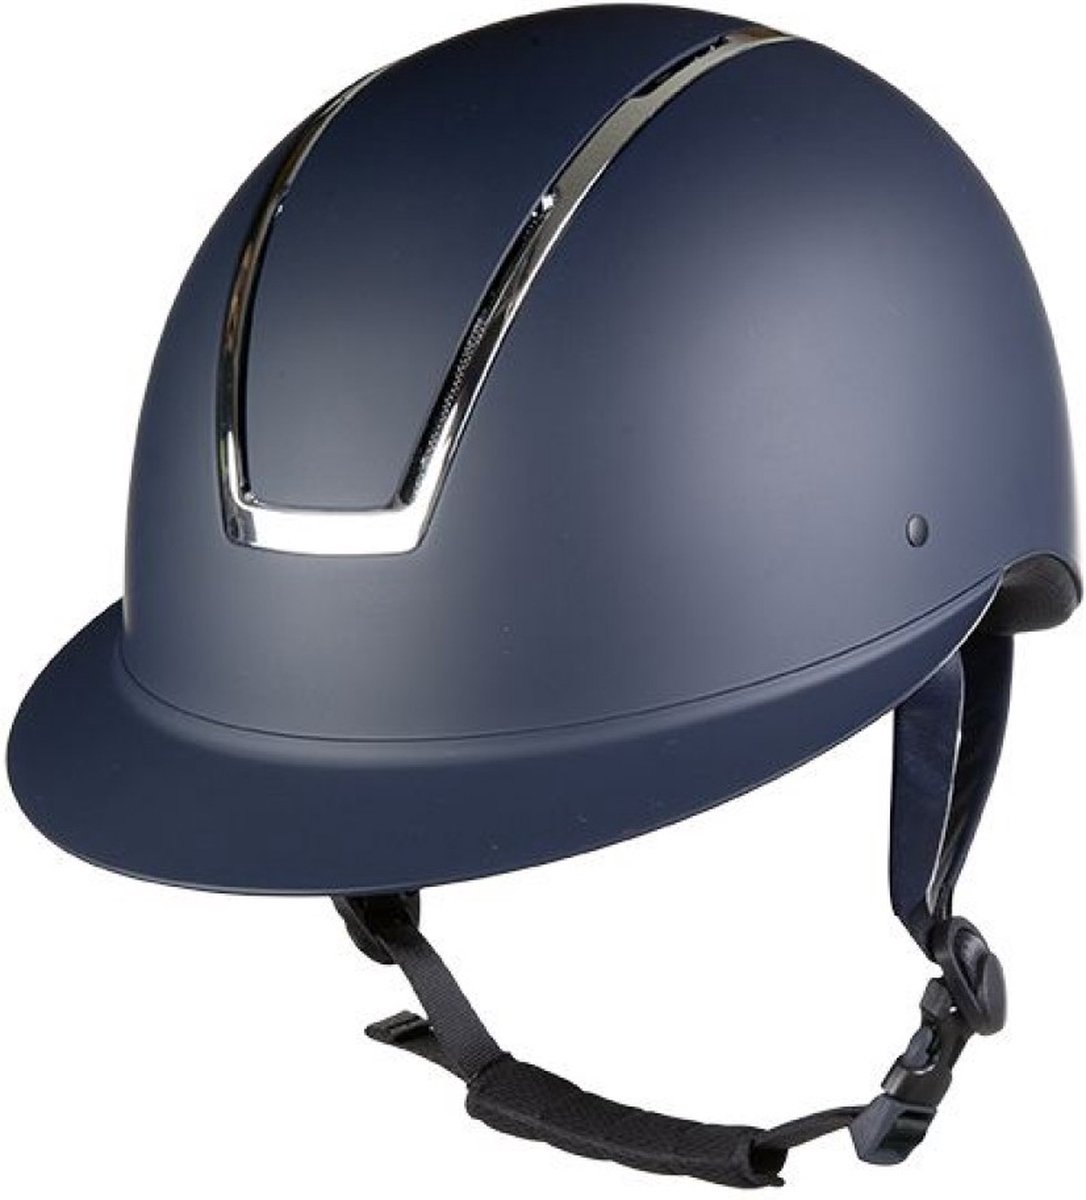 cap veiligheidshelm Lady shield donkerblauw / zilver maat M (55 - 57 cm)